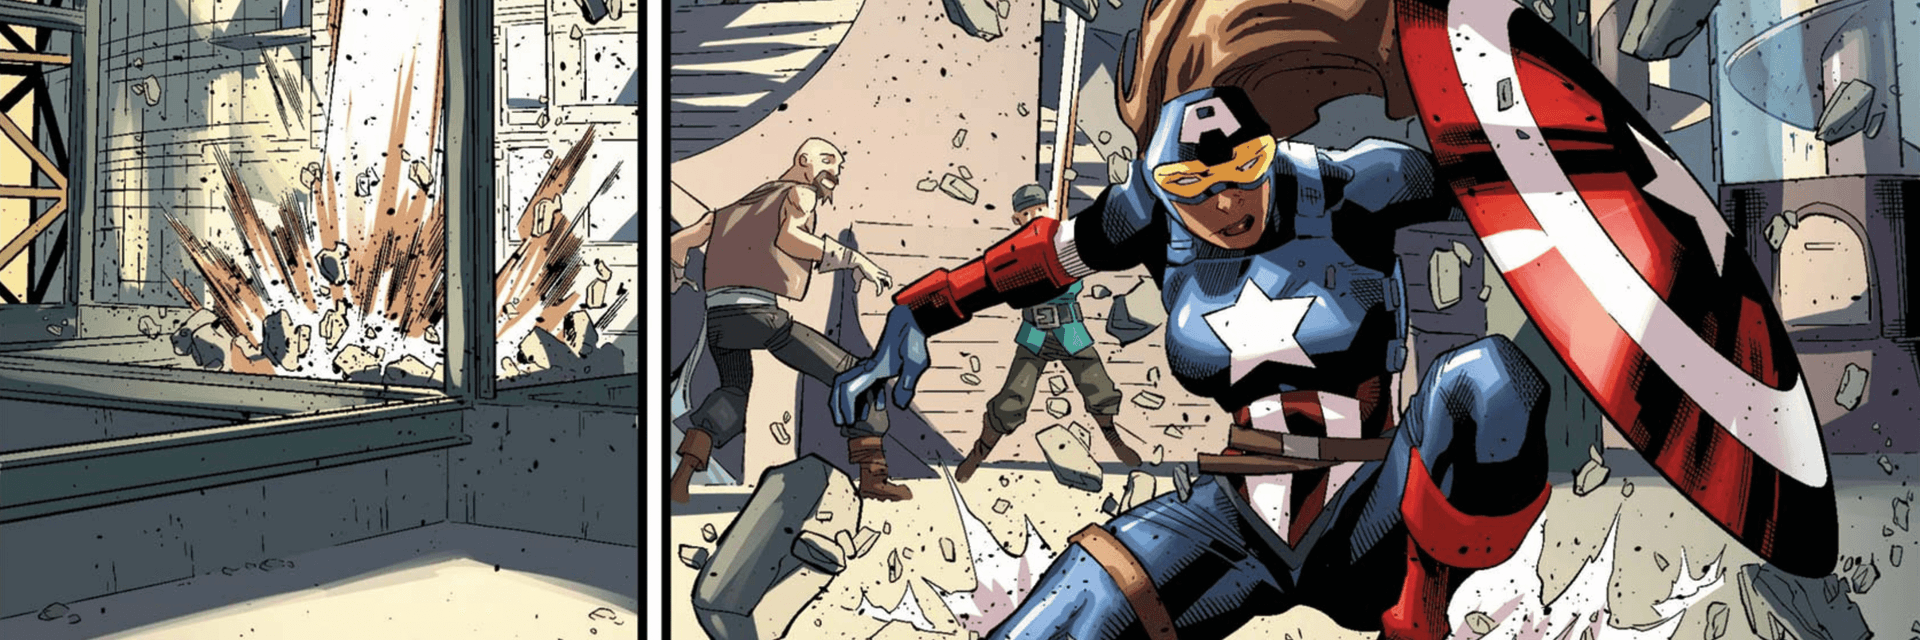 Captain America (Danielle Cage)